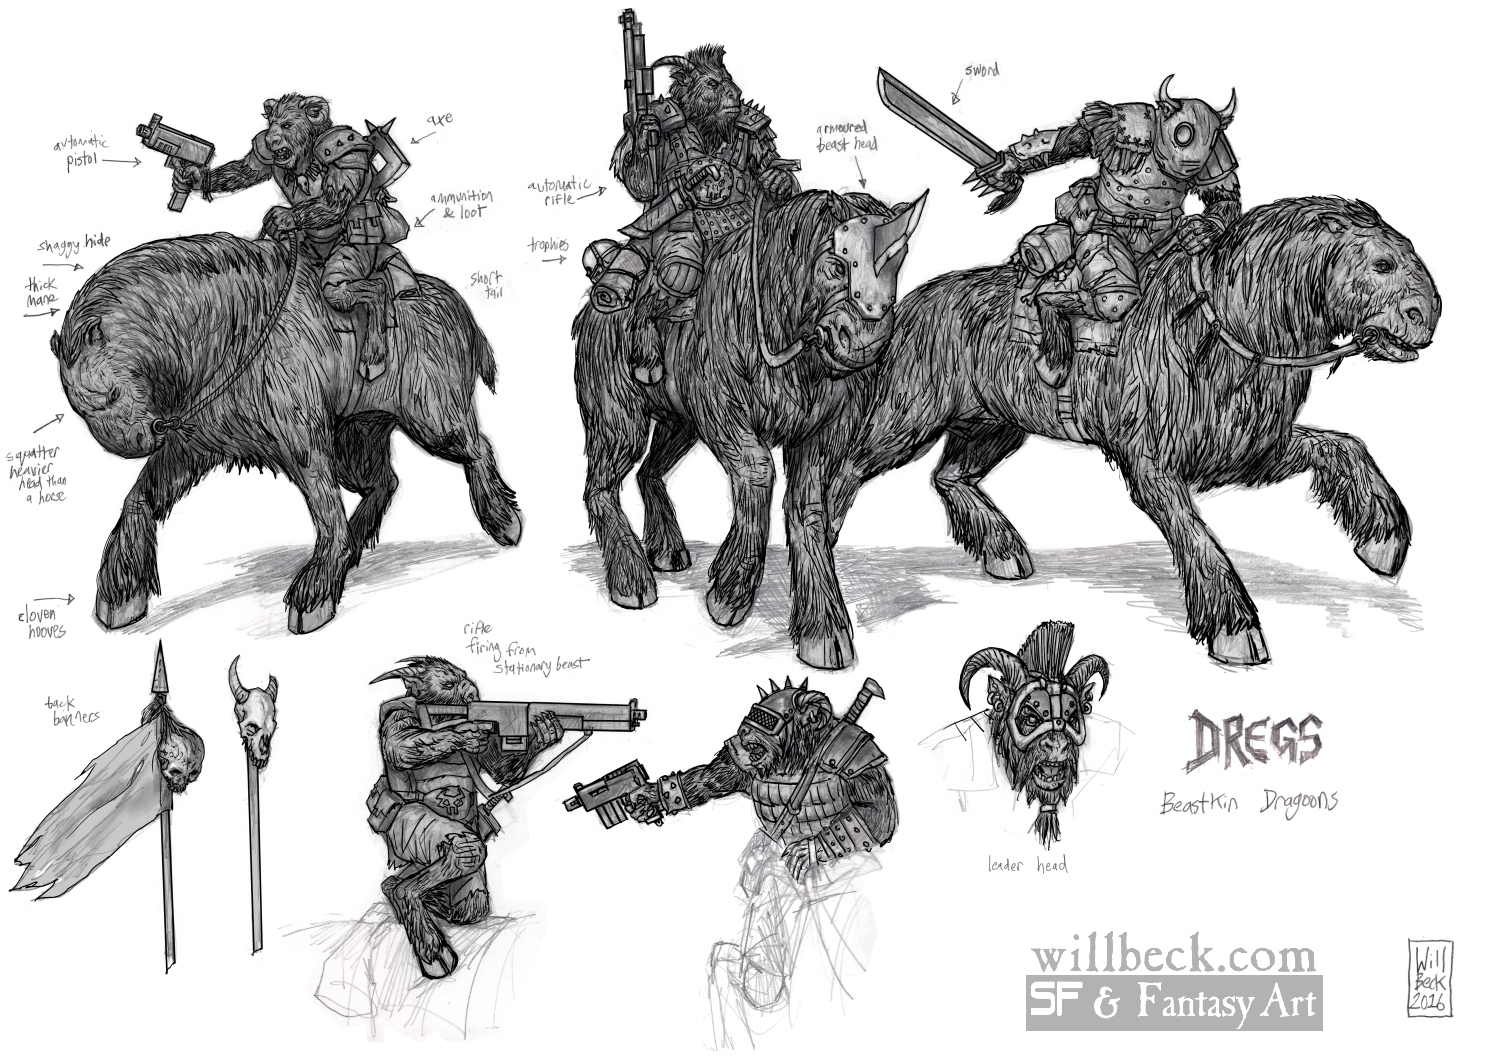 Dregs Beastkin Dragoons